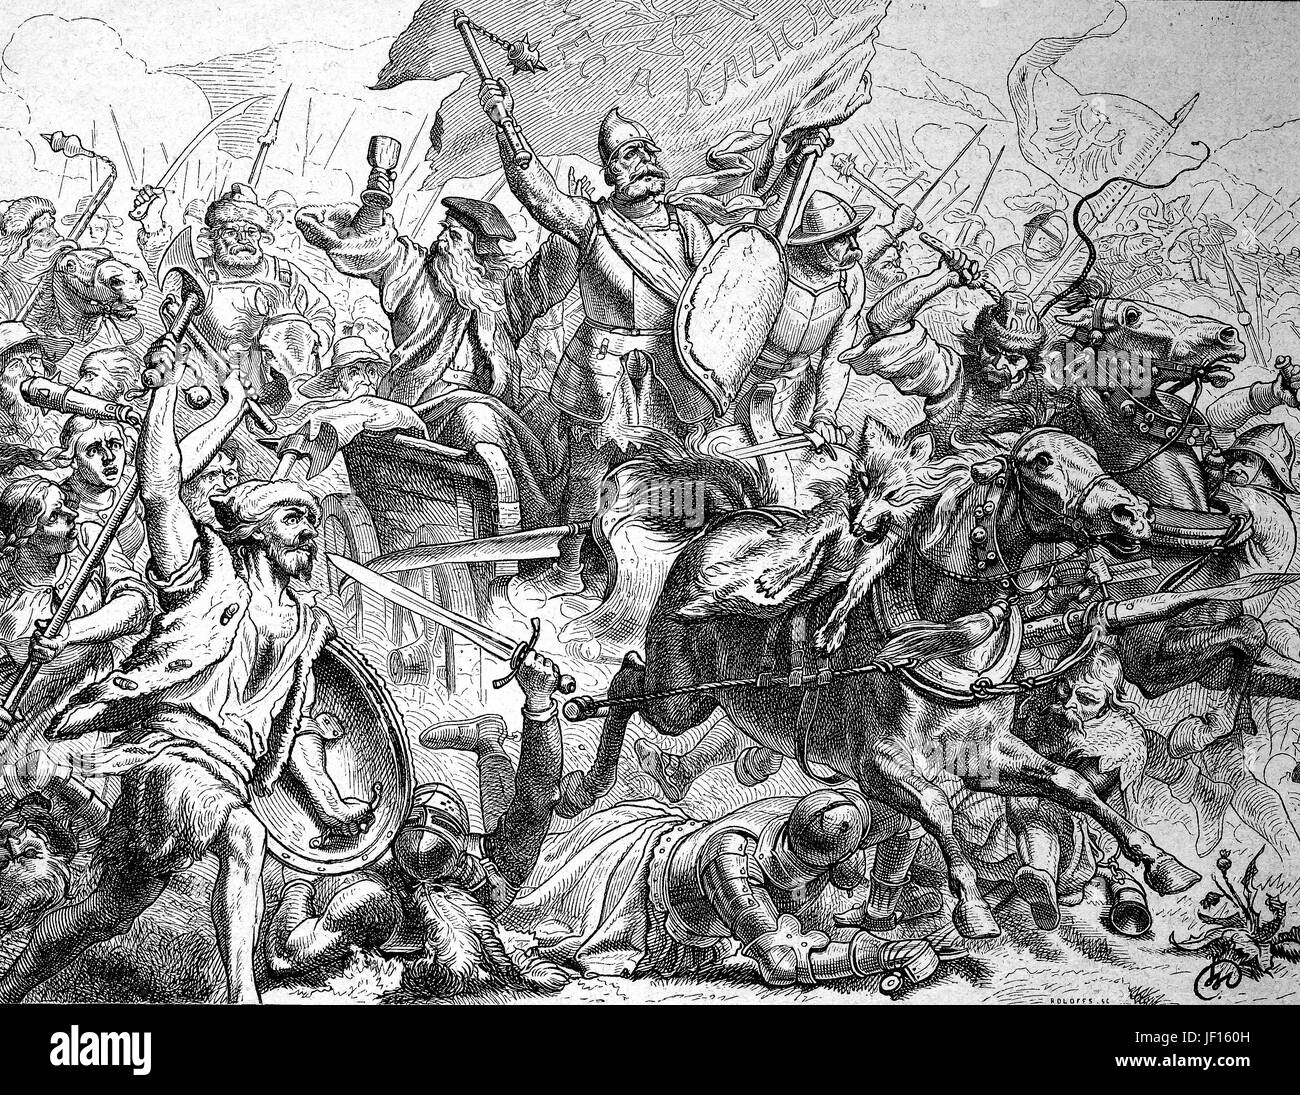 Historische Darstellung der Schlacht am Berg Witkow, Ziskaberg, 1420, Hussitenkriege, auch genannt der böhmischen Kriege oder die hussitische Revolution, Digital verbessert Reproduktion aus einer Originalgraphik von 1888 Stockfoto